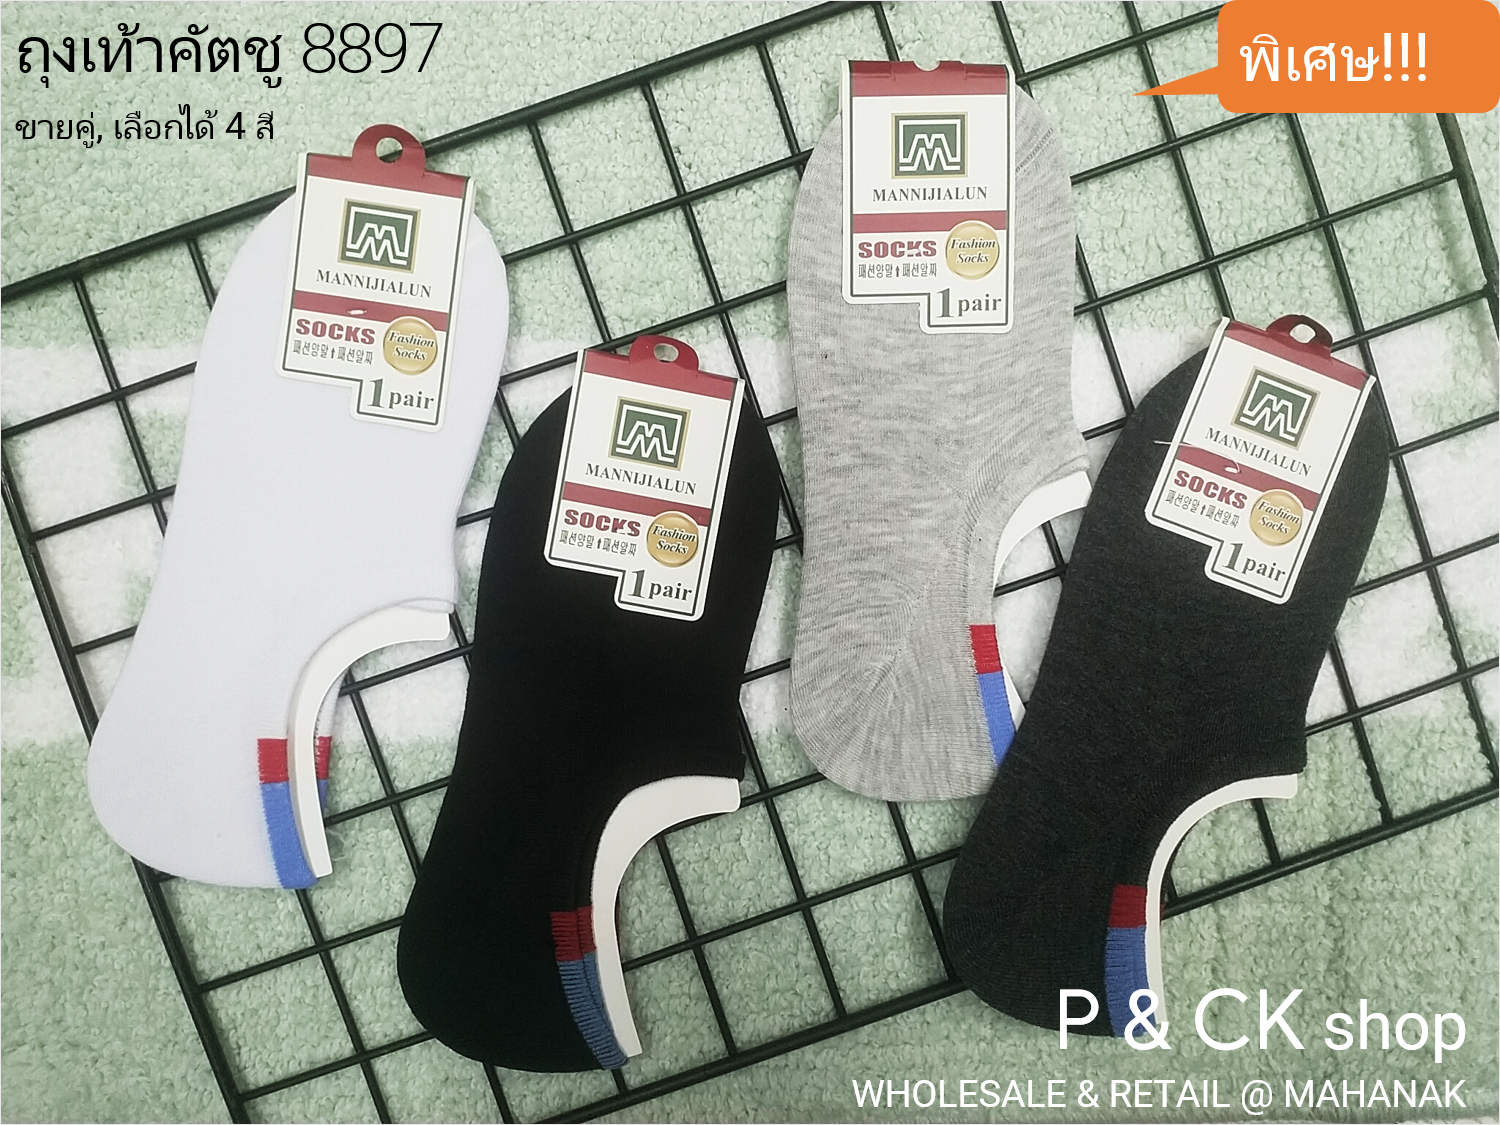 P & CK / #8893 - #8899 ถุงเท้าผู้ชายแฟชั่นข้อเว้าฟรีไซส์ [ขายเป็นแพ็ค 10 คู่]: เลือกได้หลายลาย, คละสี 10 คู่ [โปรดกด "เพิ่มลงรถเข็น" เลือกลาย]